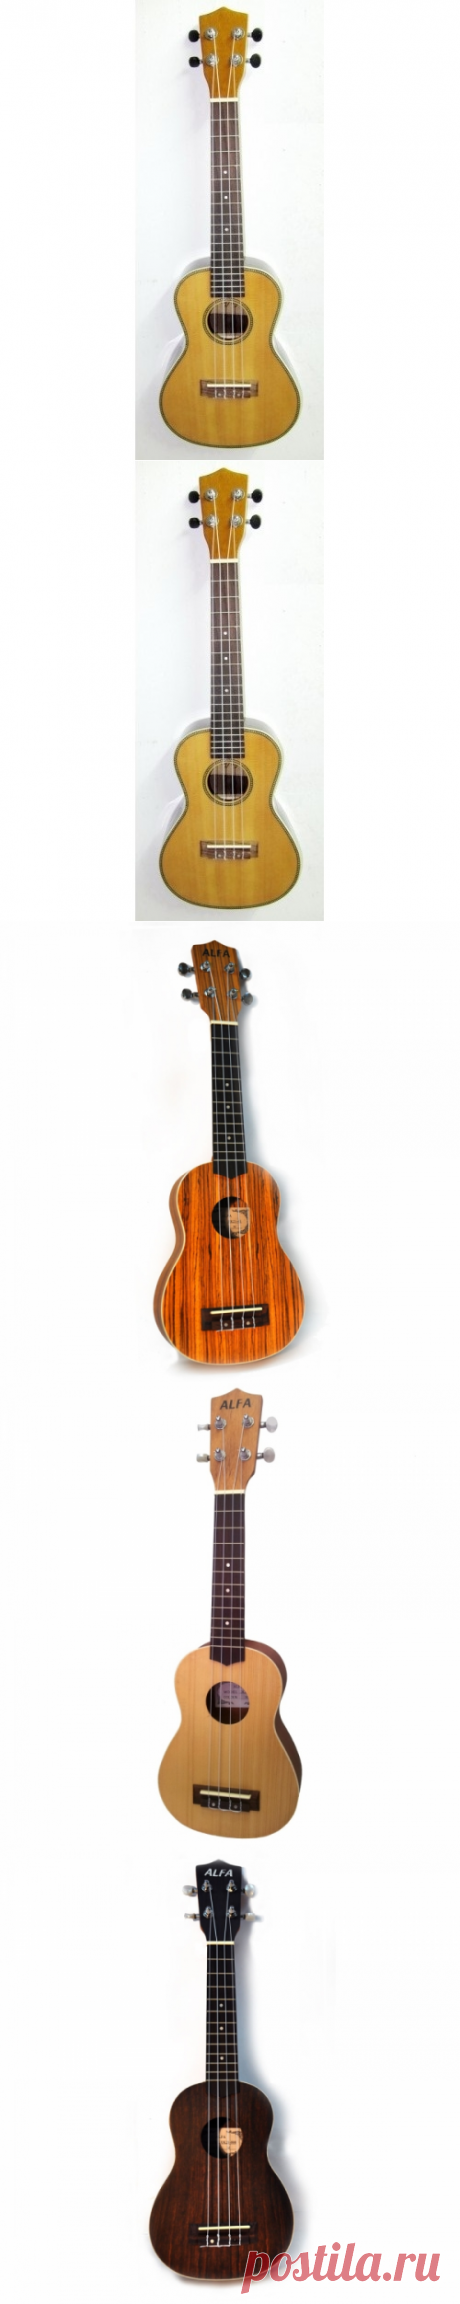 Укулеле (гавайская гитара) | tatet.ua - купить гавайскую гитару в интернет магазинах Украины: Киева, Харькова и др.
На любой вкус